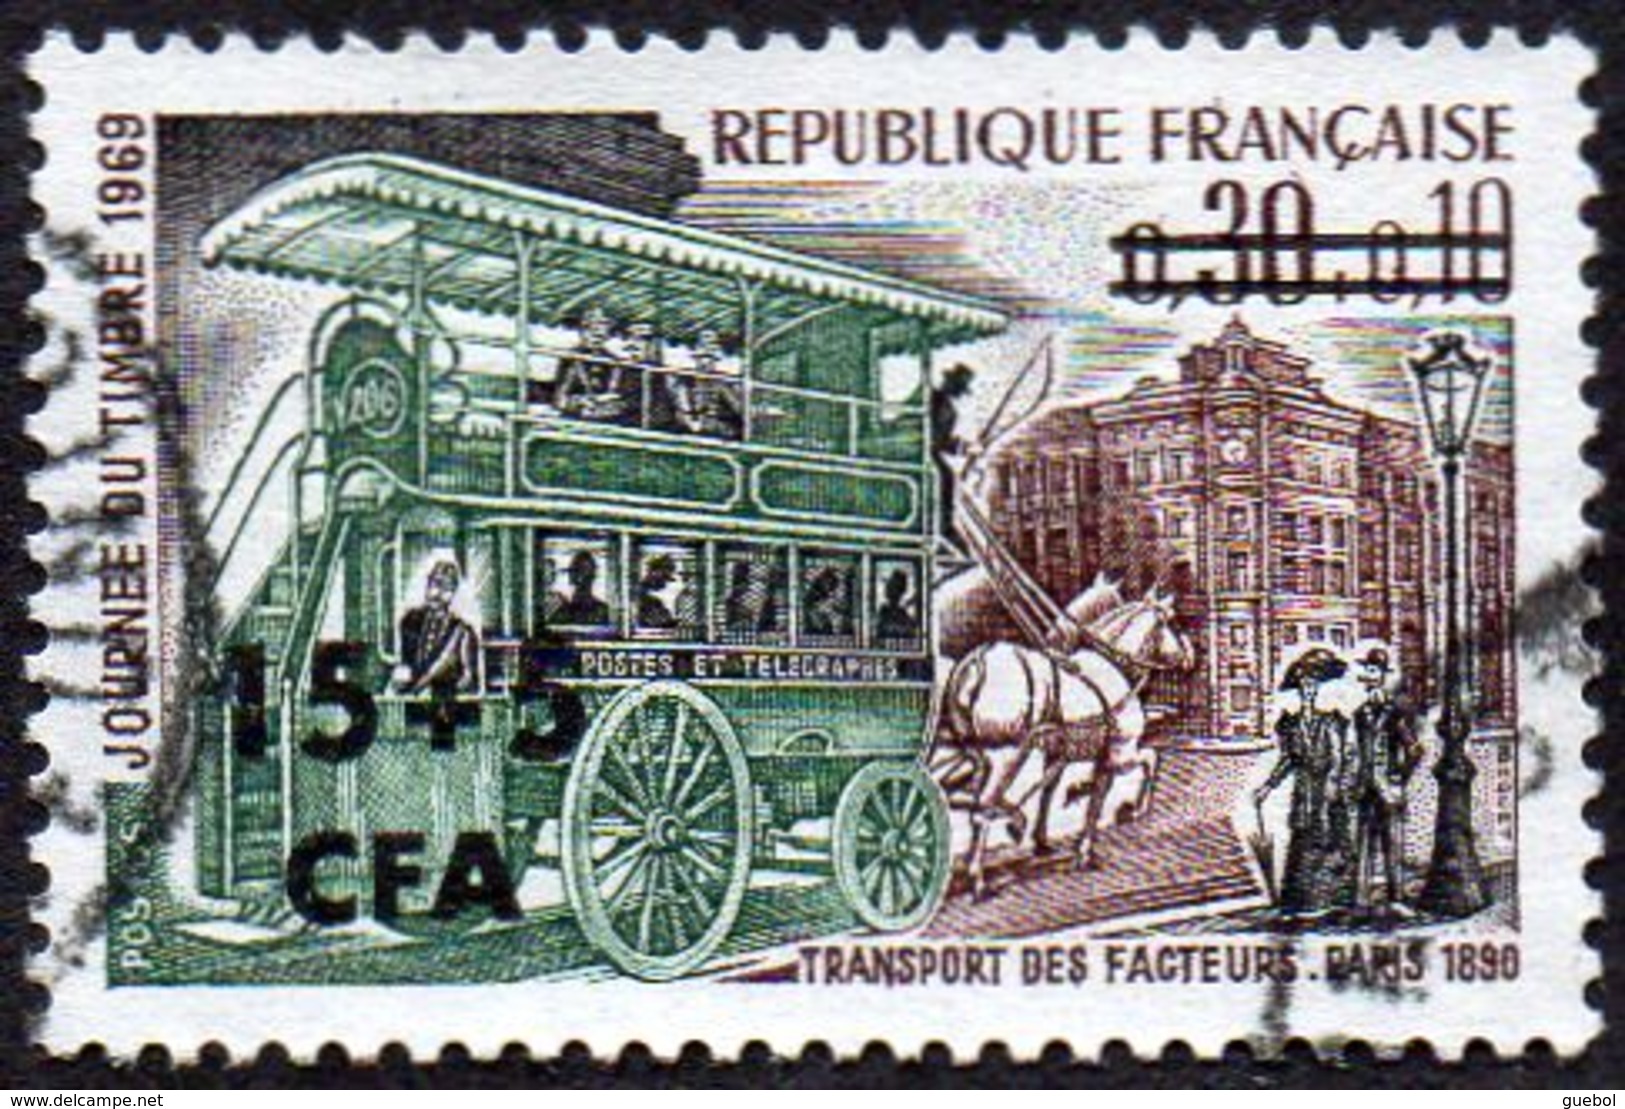 Réunion Obl. N° 383 Journée Du Timbre 69 - Omnibus De Transport Des Facteurs En 1890 - Oblitérés